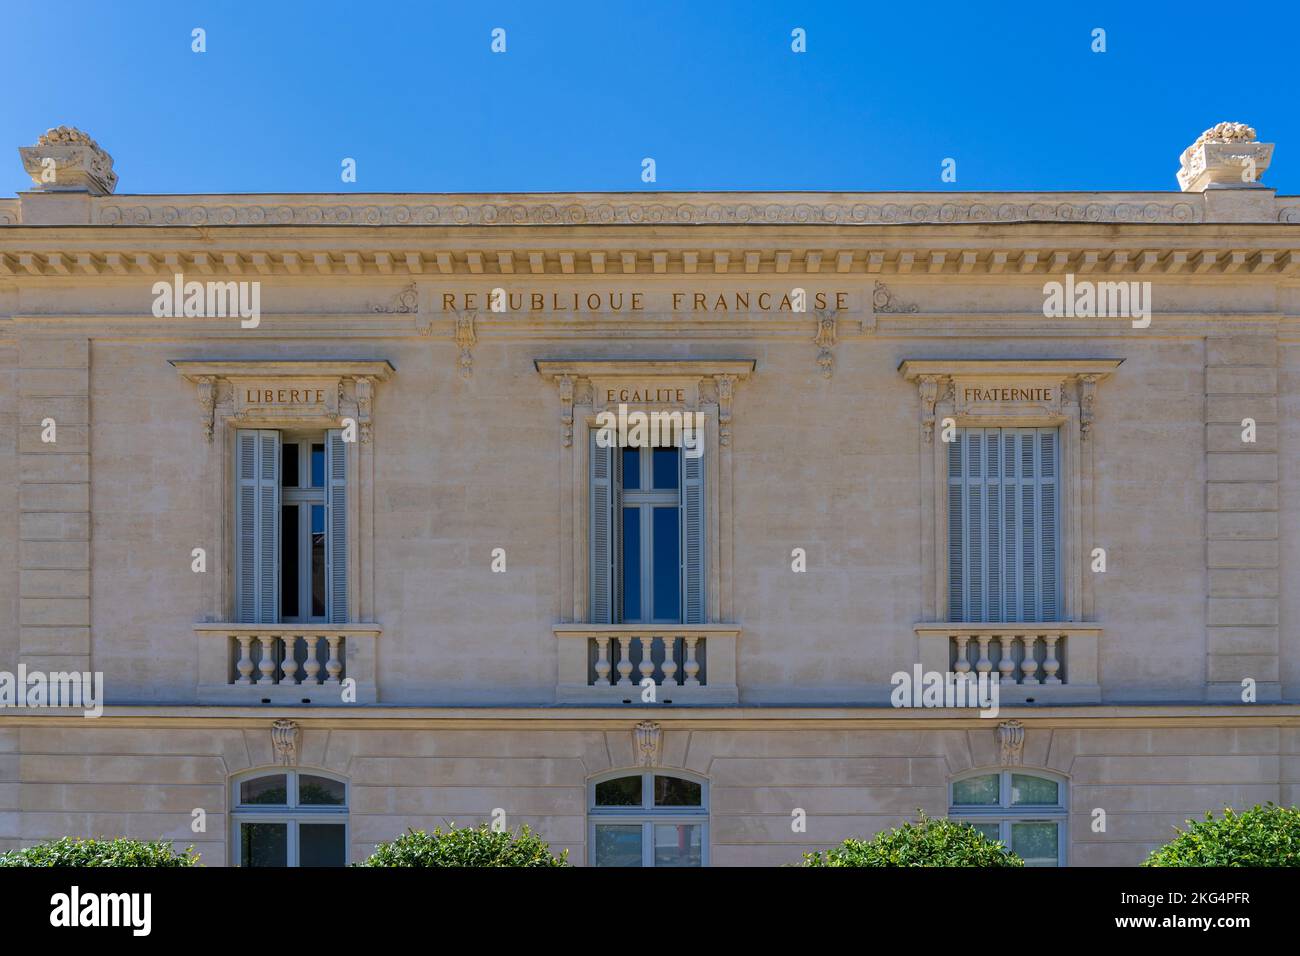 Libertad, Igualdad, Fraternidad: El lema nacional de la República Francesa inscrito en la fachada de un antiguo edificio público en Montpellier, Francia Foto de stock